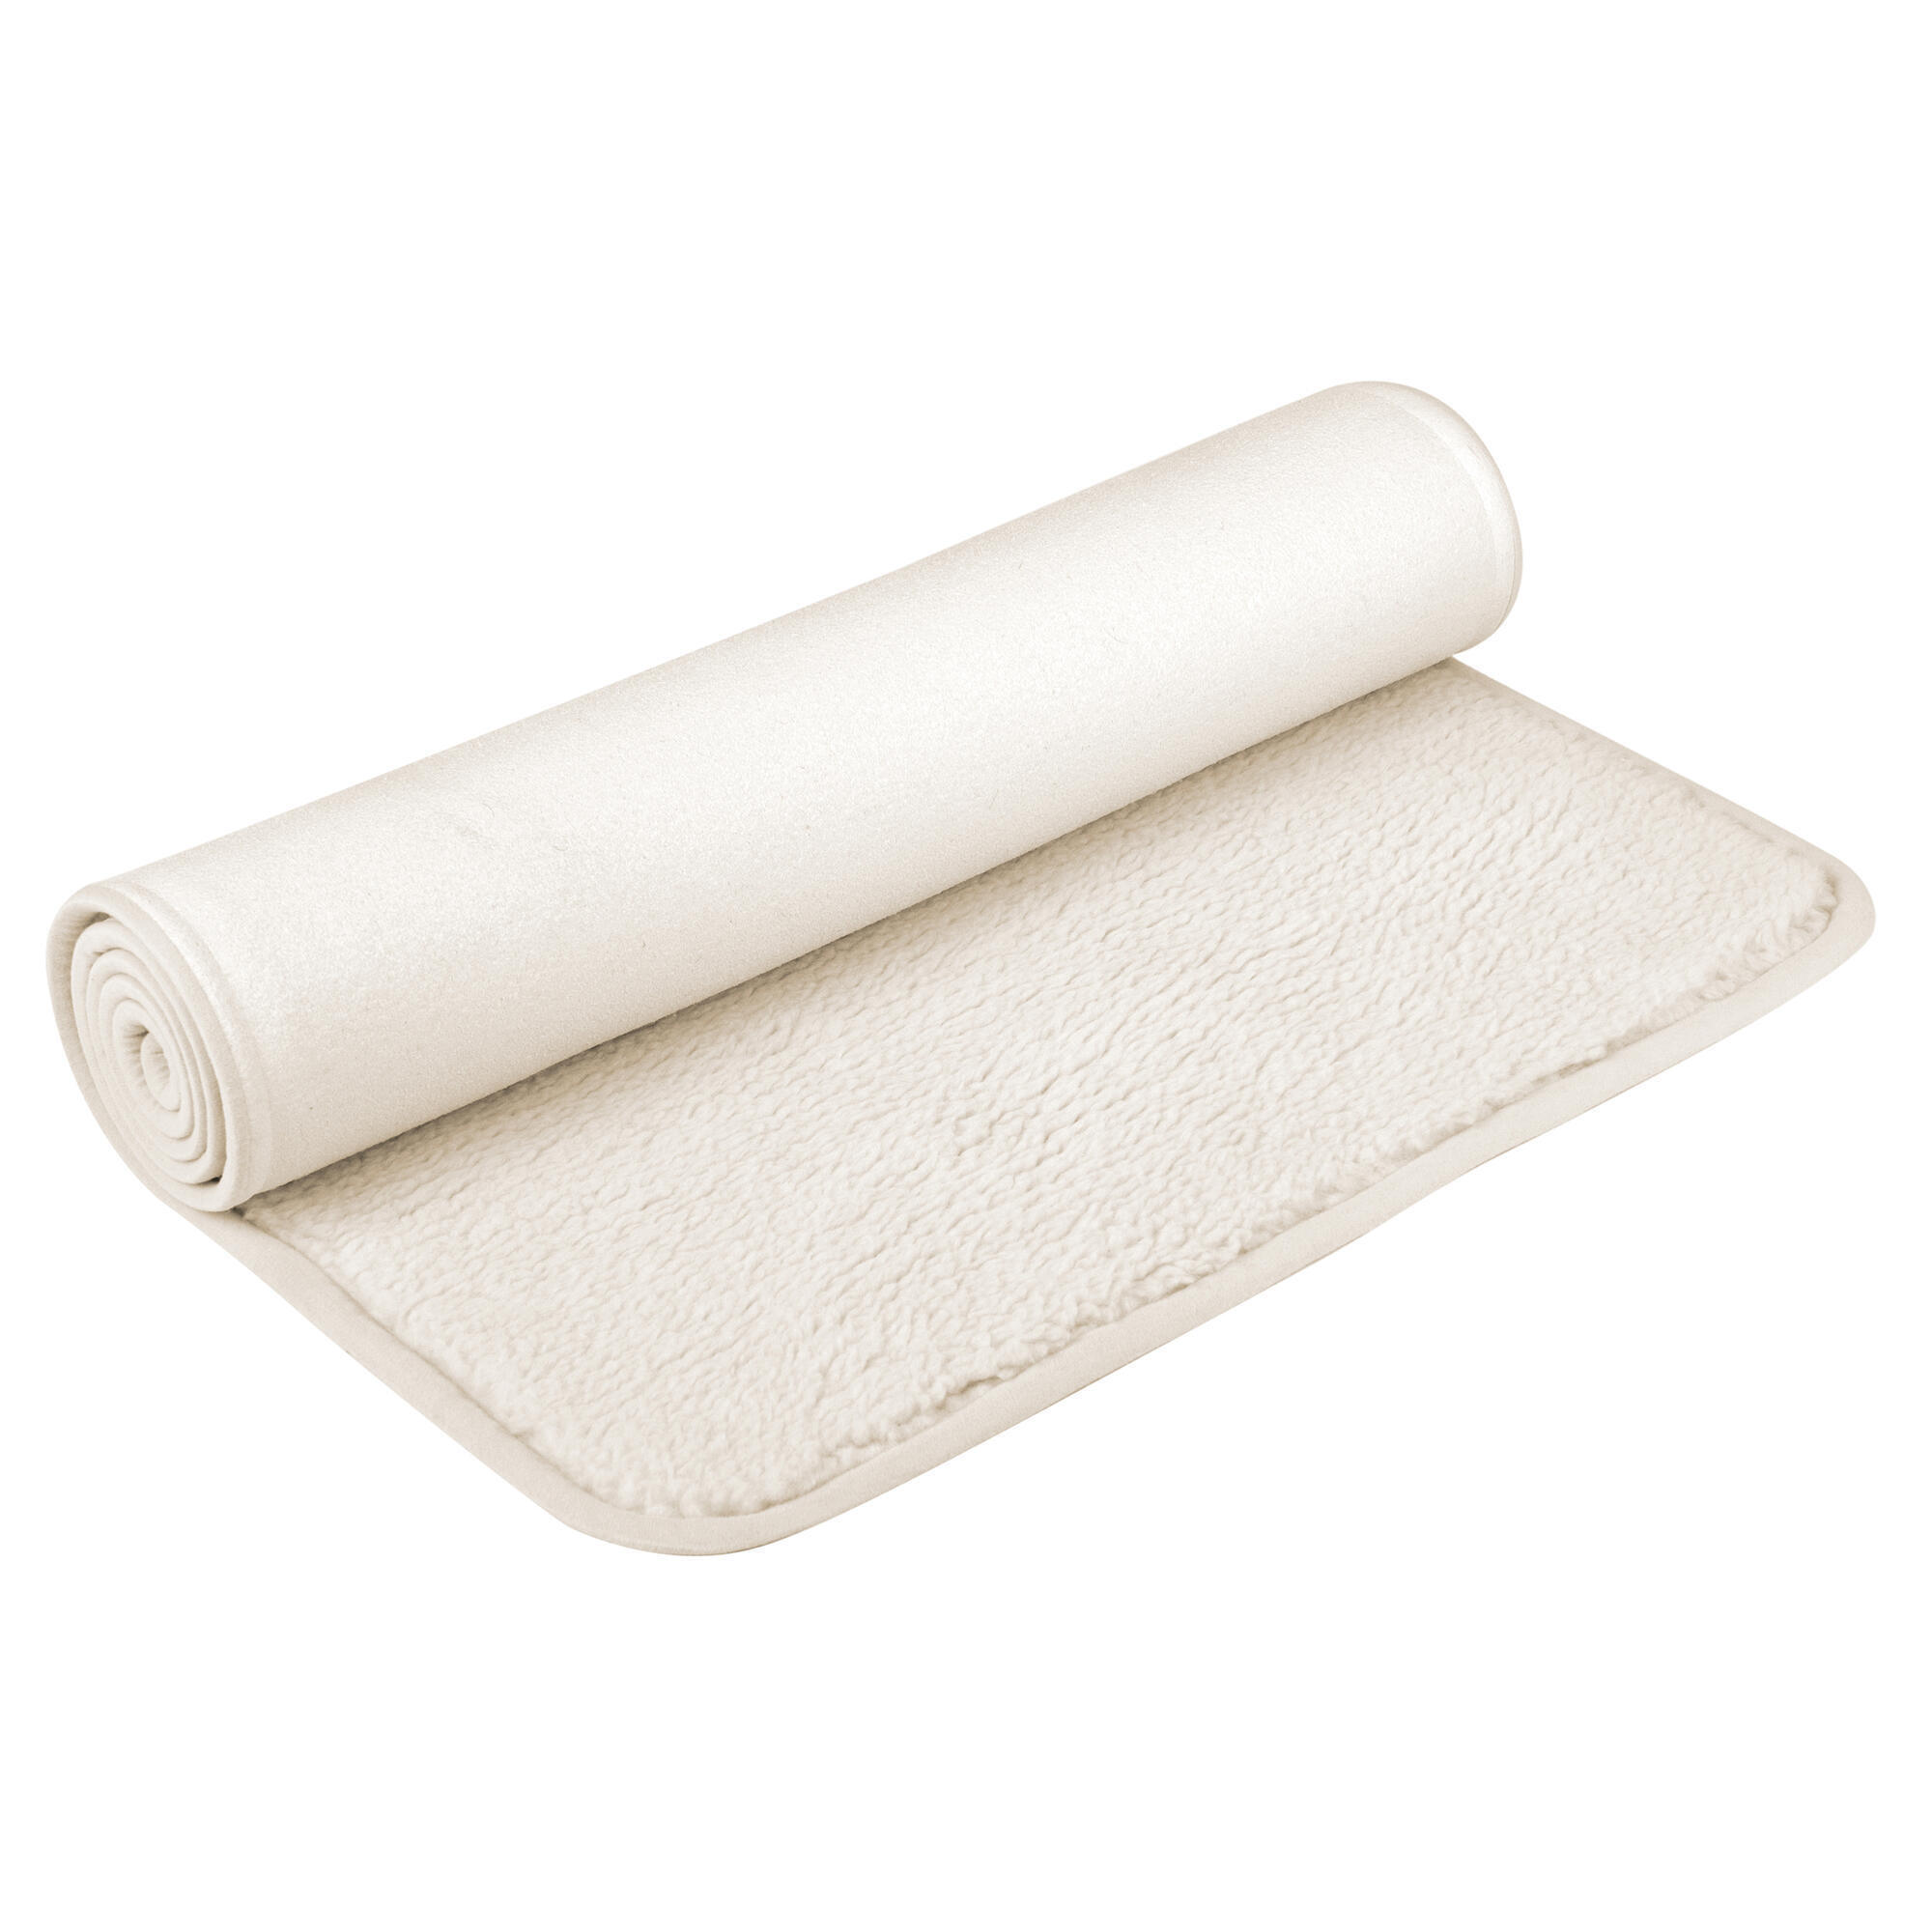 Коврик для йоги Airex Eco Grip, антрацит, антрацитово-серый коврик для йоги airex yoga eco grip mat 183х61х0 4 см фиолетовый надпись 0 4 см